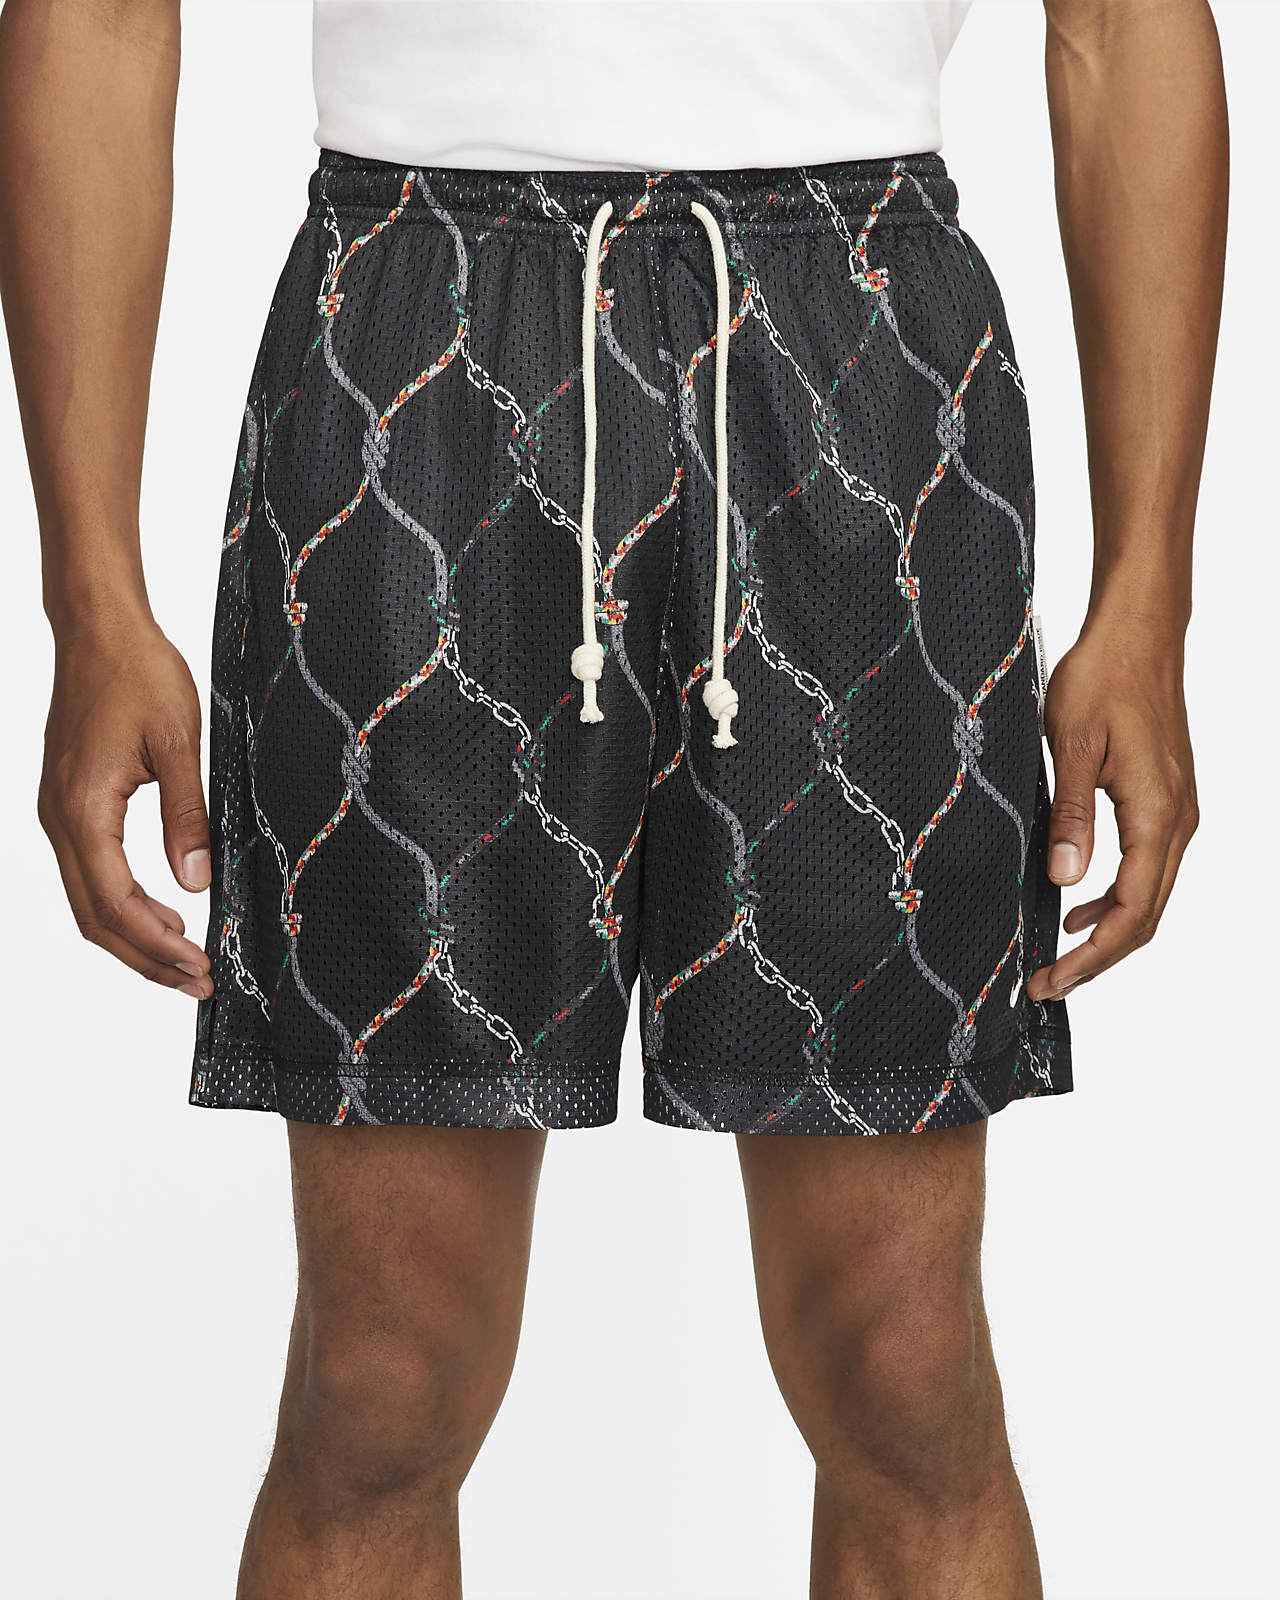 100% Authentic Louis Vuitton Trunks Shorts Vintage Swim Size M Medium  Monogram